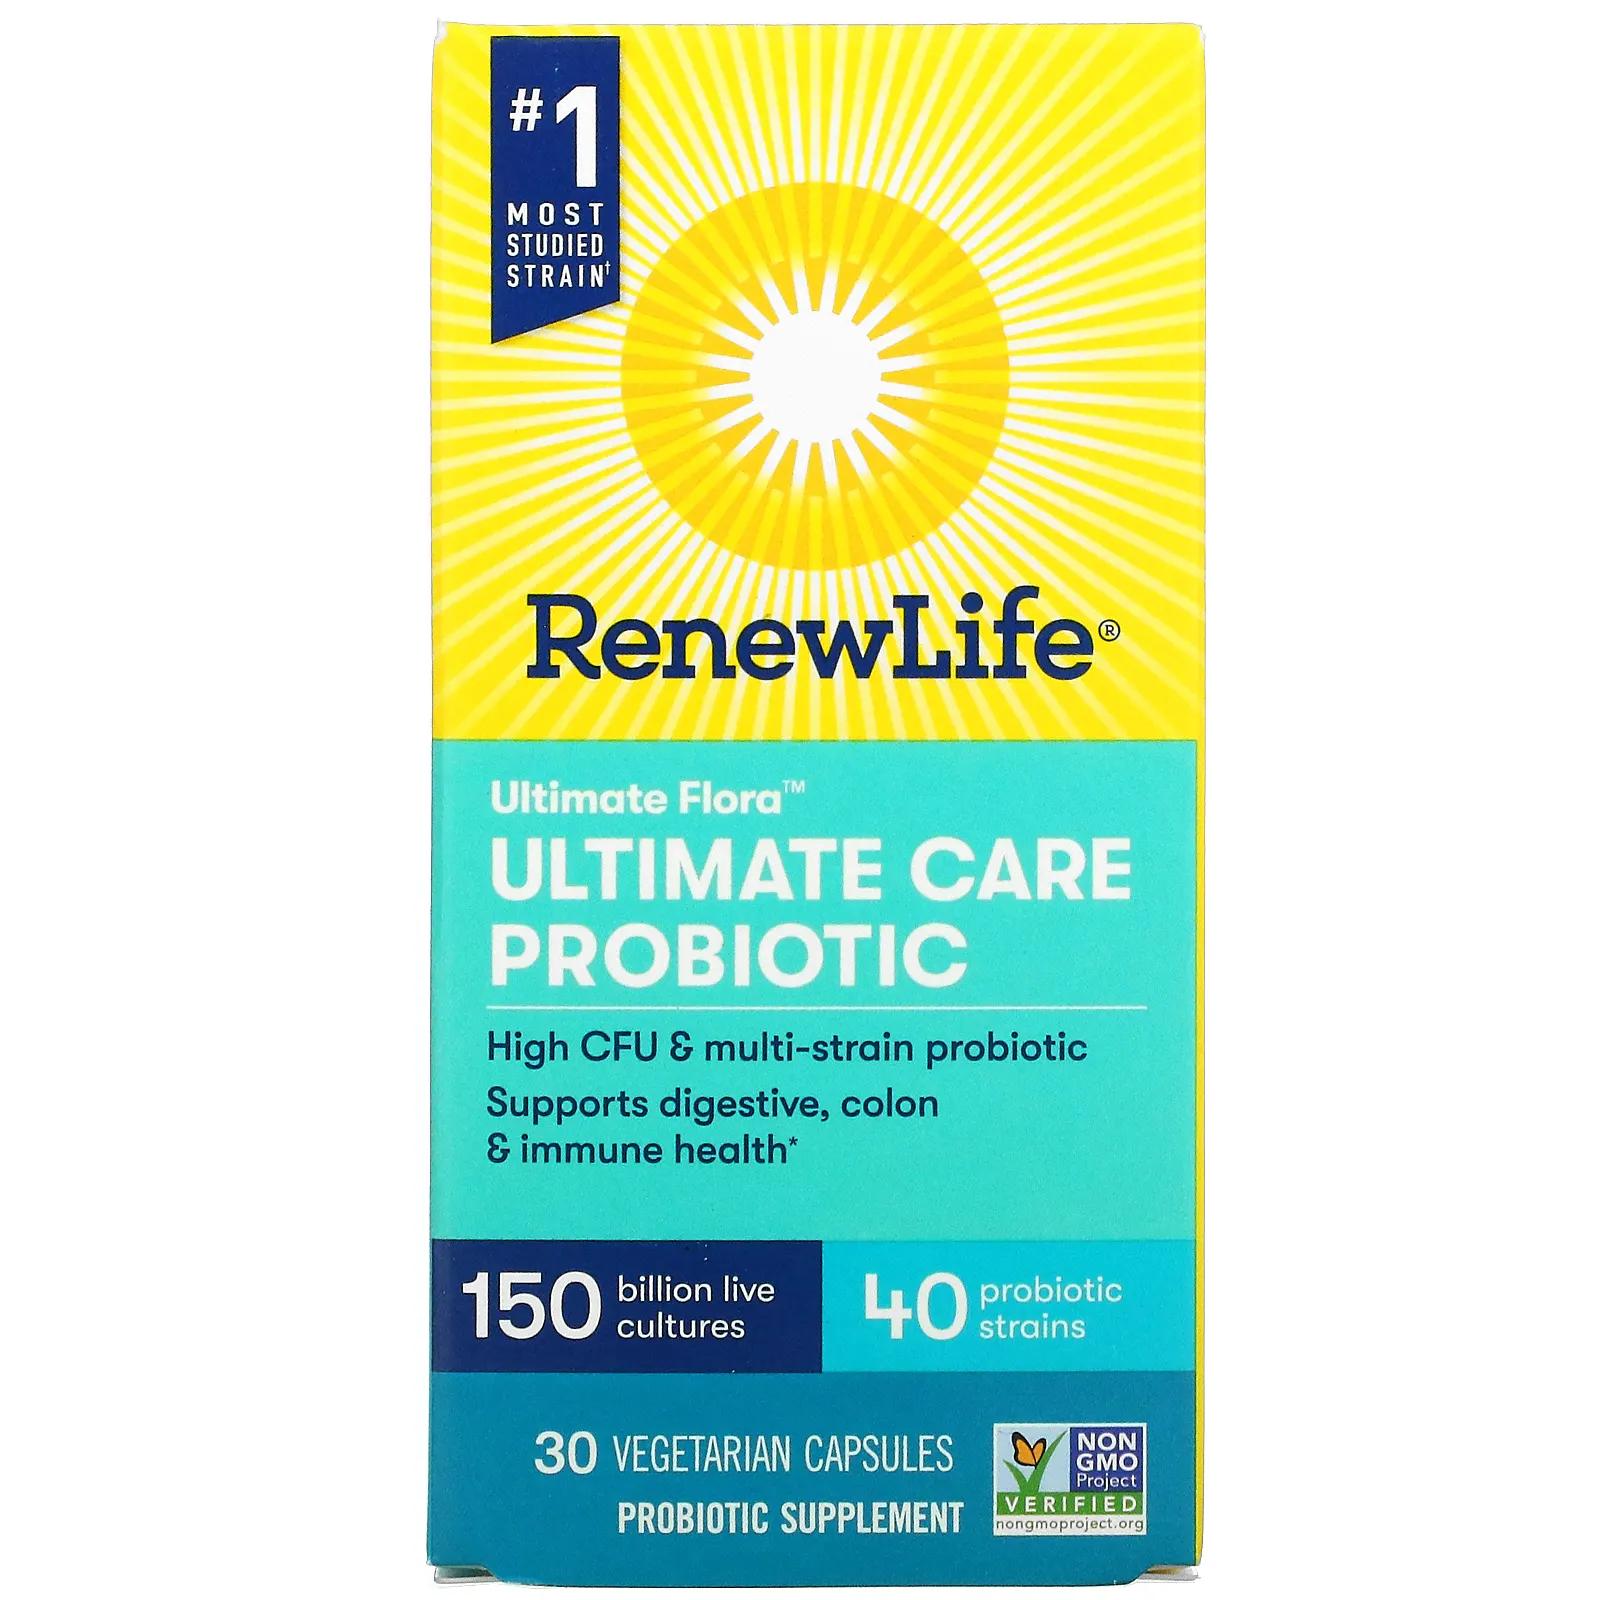 Renew Life Ultimate Flora Ultimate Care Probiotic 150 Billion Live Cultures 30 Vegetarian Capsules dim 150 30 vegetarian capsules